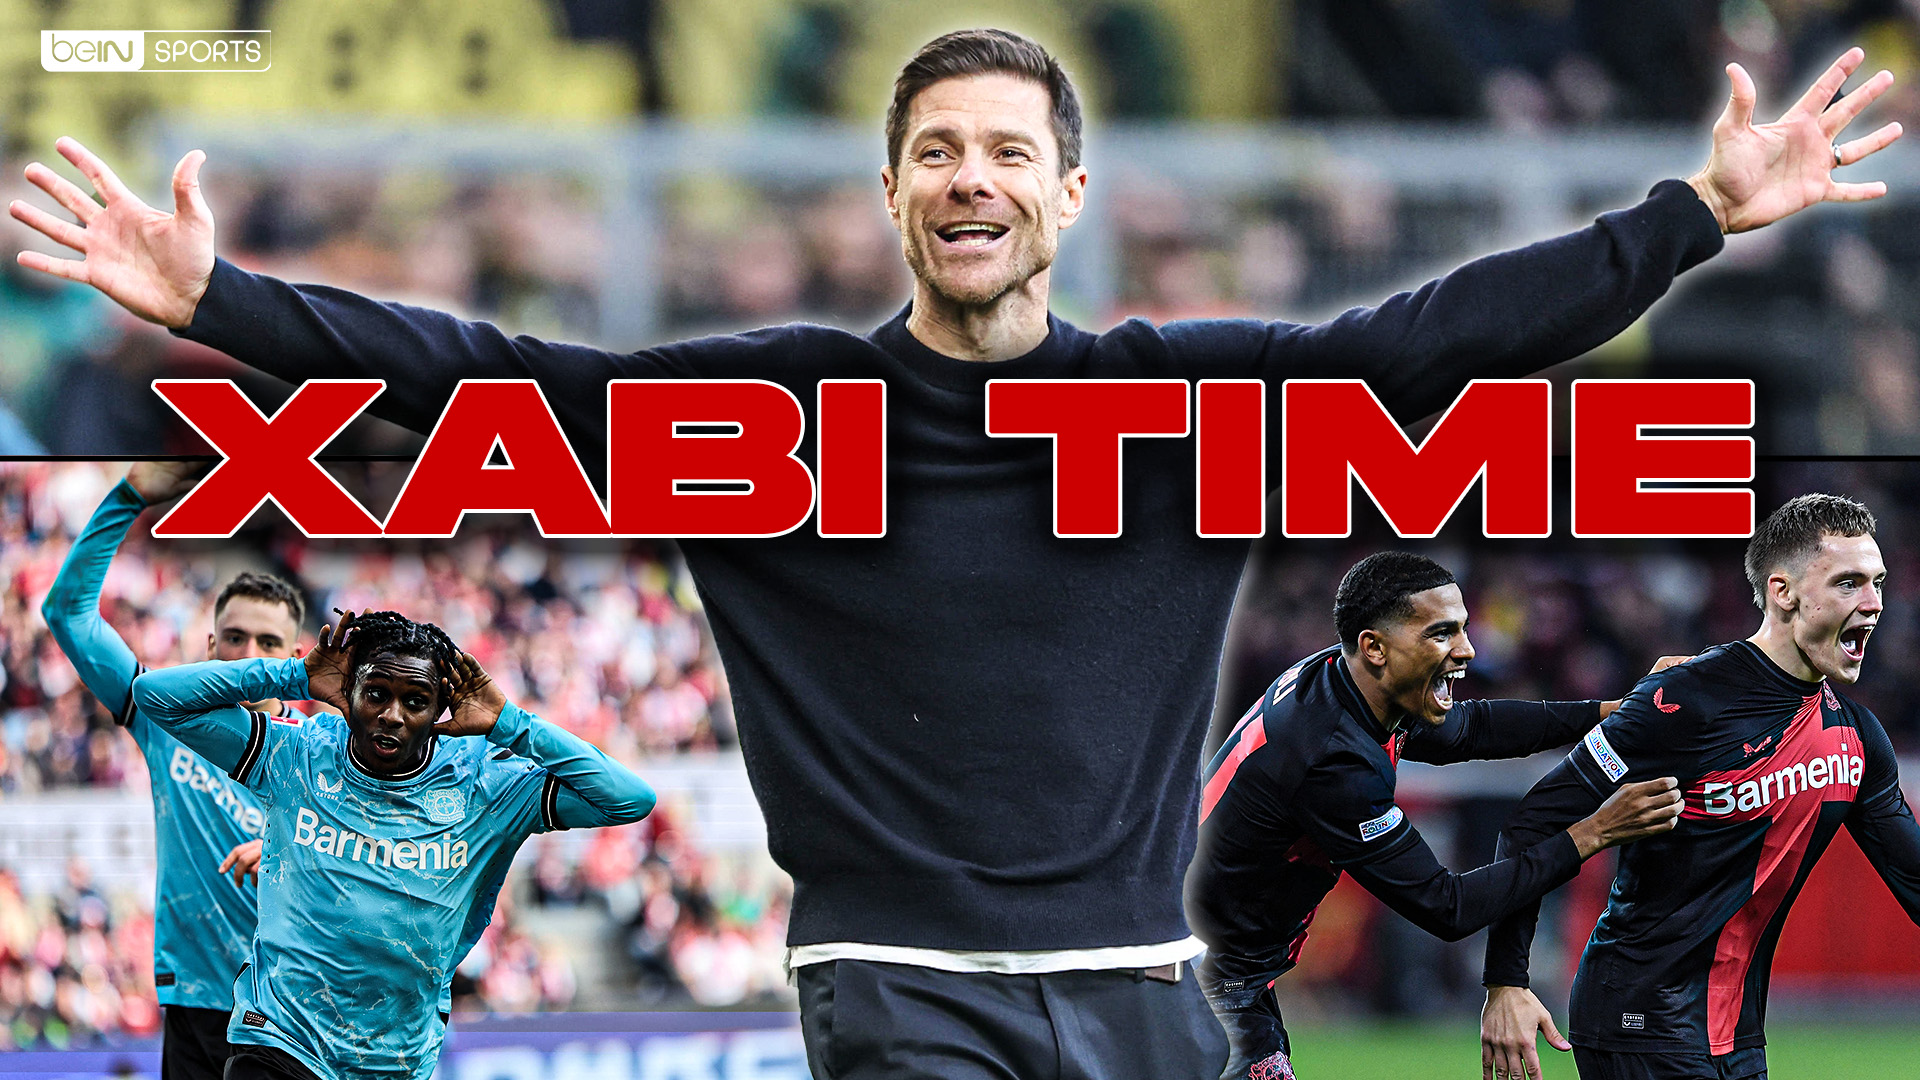 Bundesliga : Tous les buts du Bayer Leverkusen dans le Xabi Time cette saison